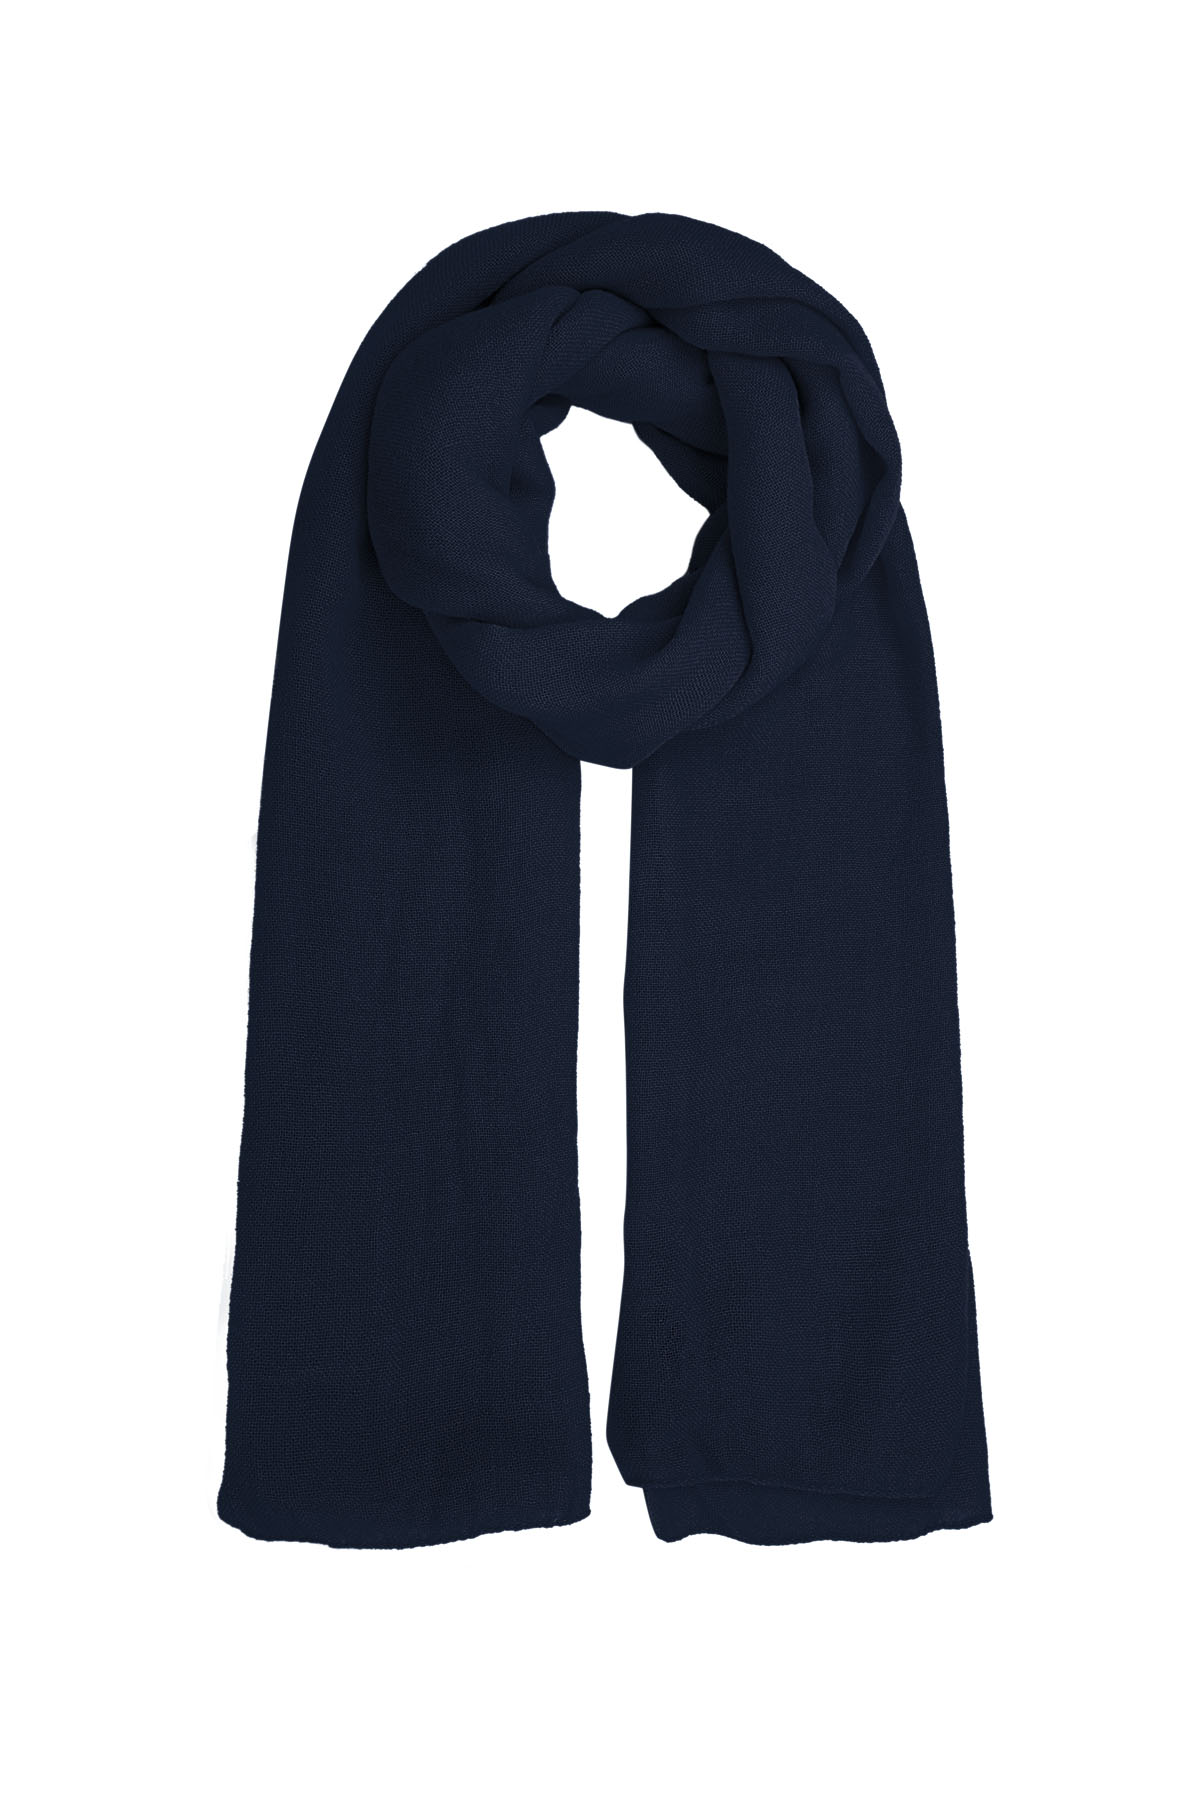 Sjaal effen kleur - marineblauw h5 